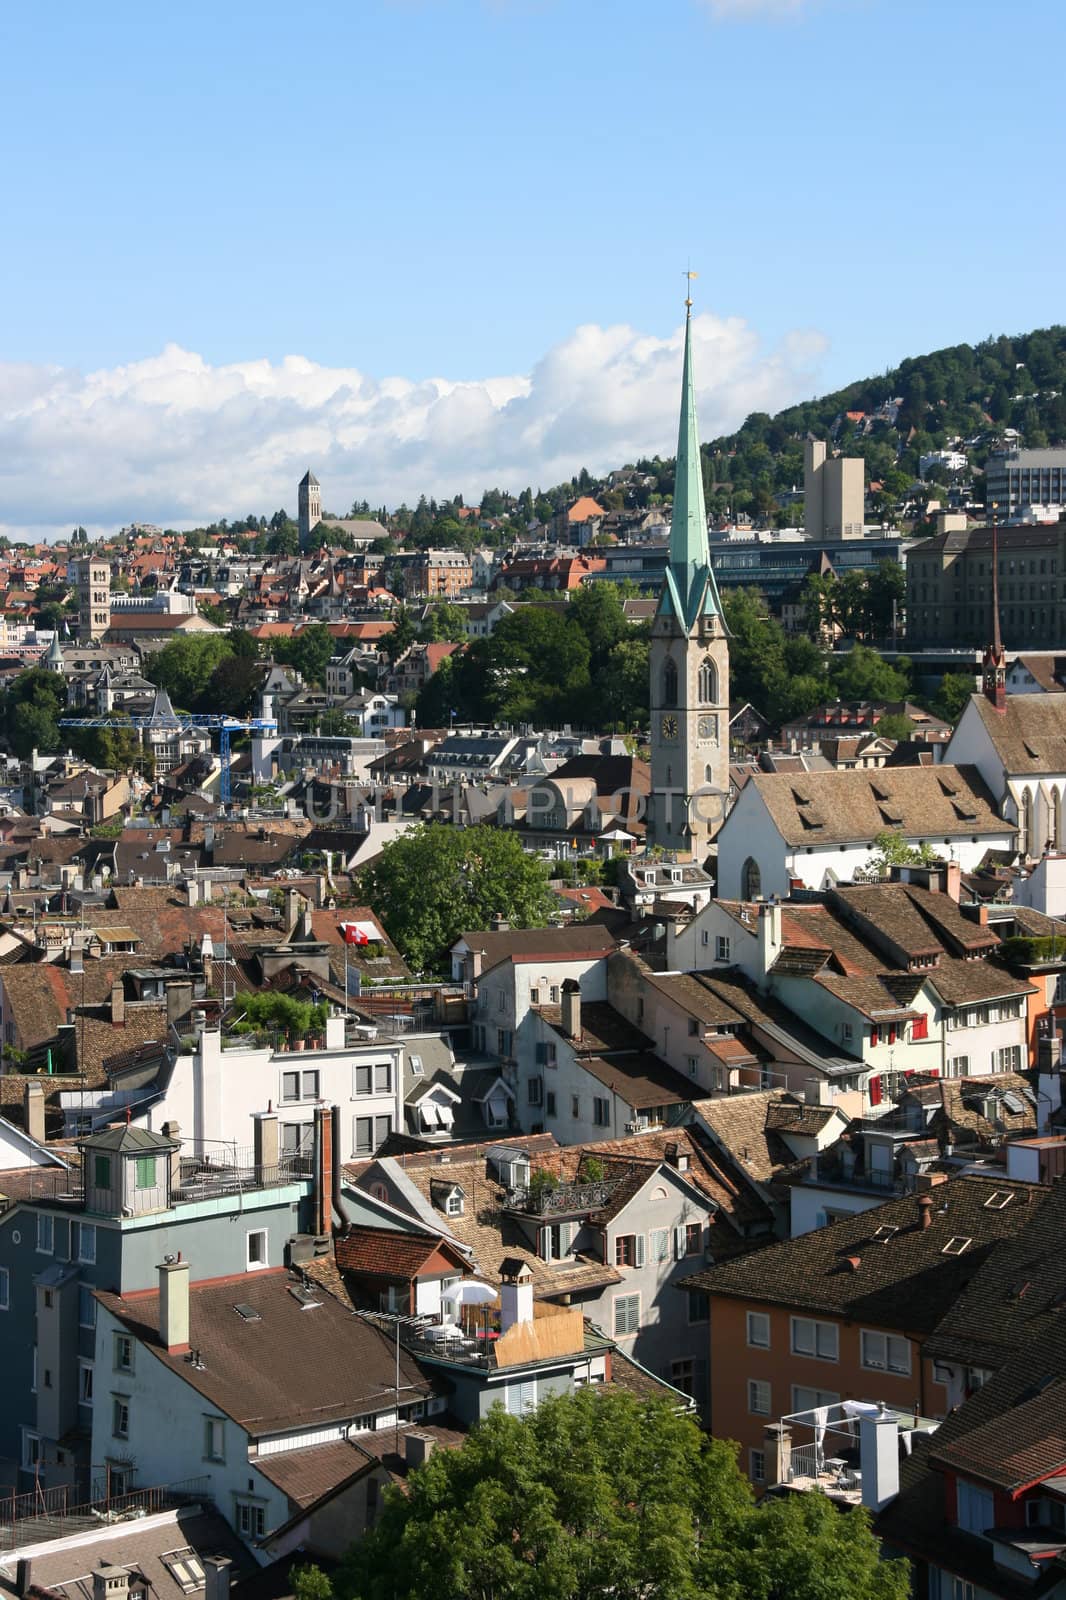 Cityscape of Zurich, Switzerland taken from Grossmuenster church. The distinctive tower is Predigerkirche (Preacher's Church).